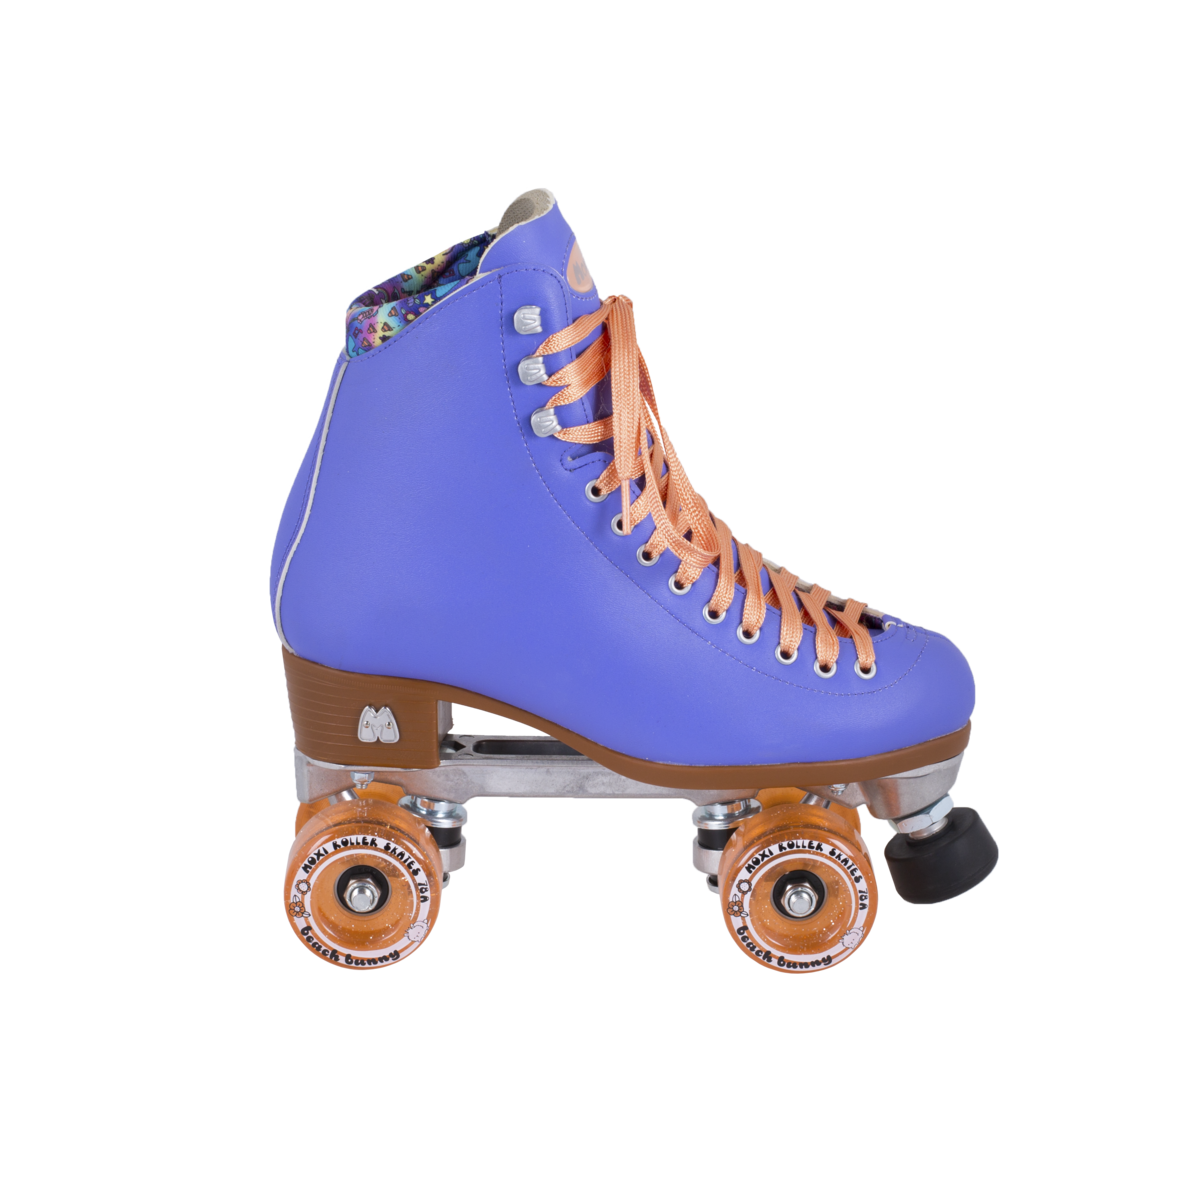 Roller Skates PNG Free File Download